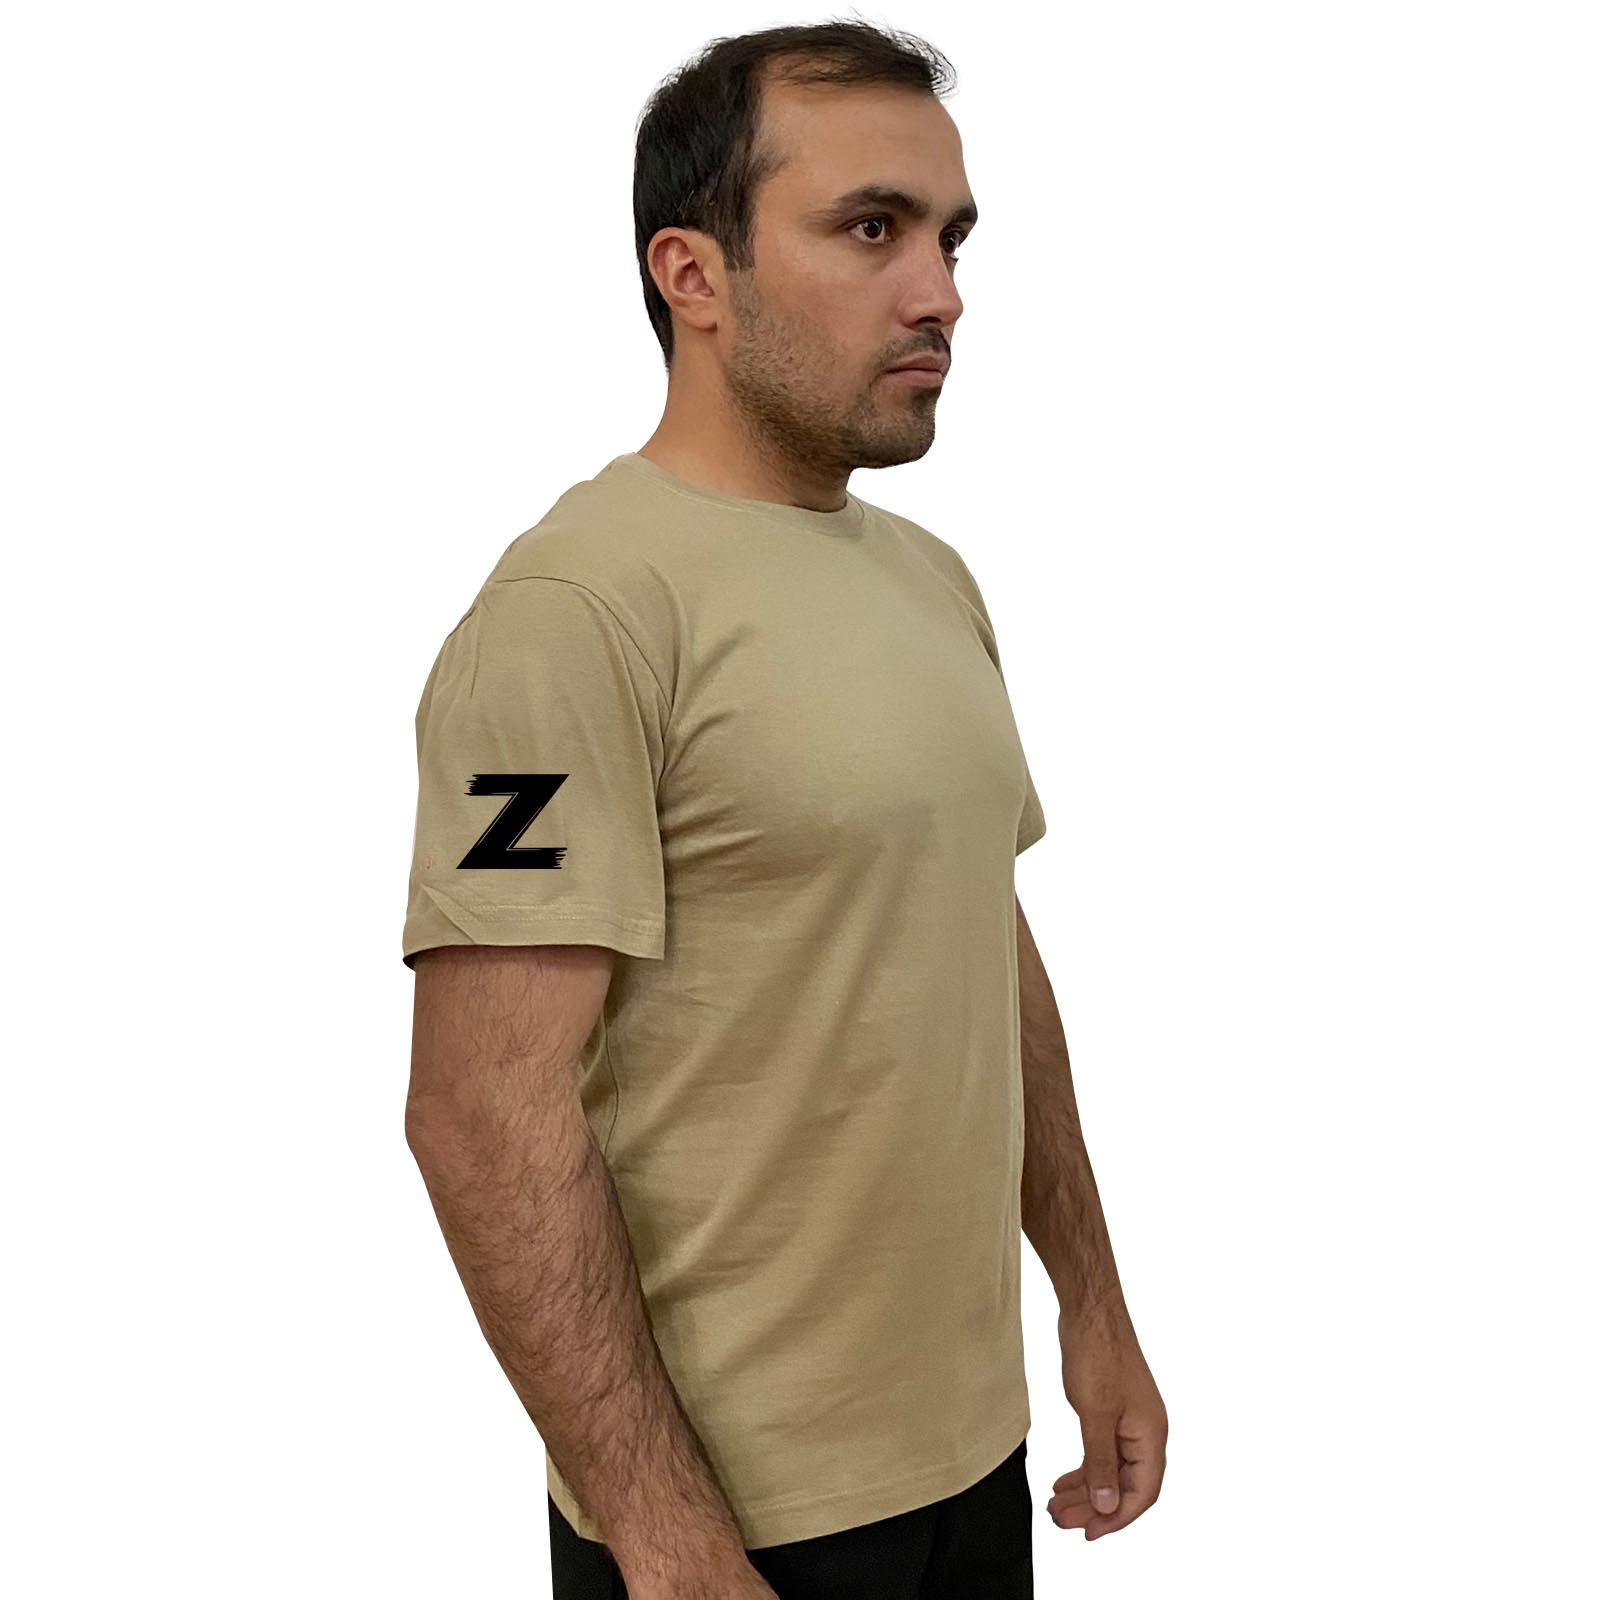 Купить песочную надежную футболку с литерой Z выгодно